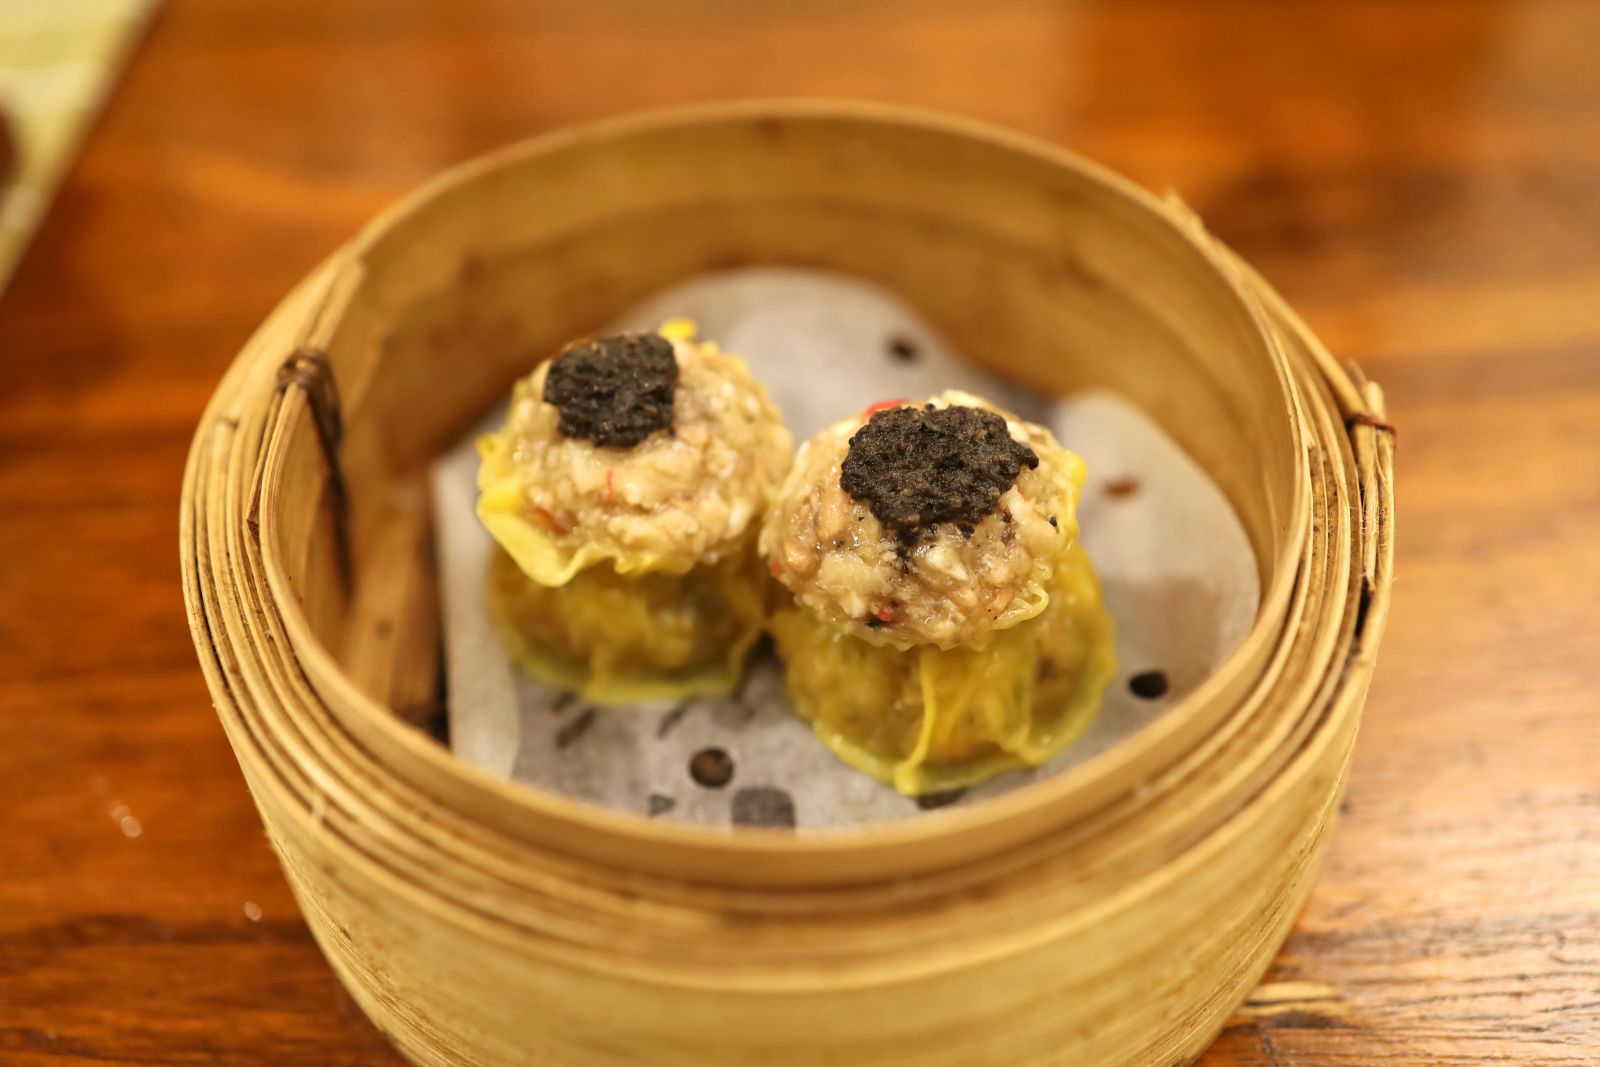 Steamed Truffle Siu Mai (黑松露燒賣)